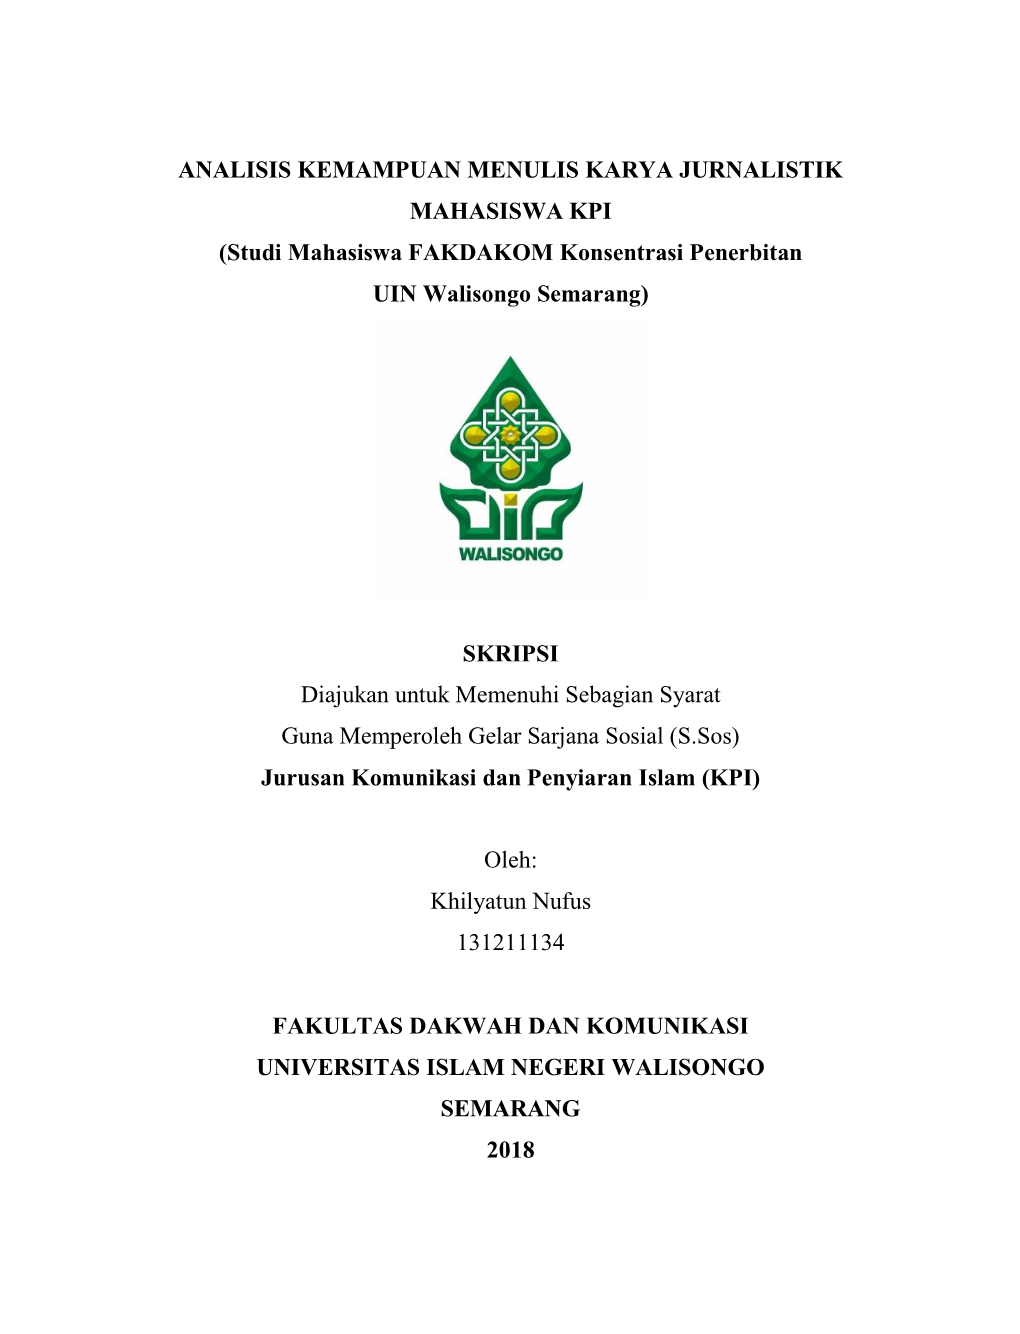 ANALISIS KEMAMPUAN MENULIS KARYA JURNALISTIK MAHASISWA KPI (Studi Mahasiswa FAKDAKOM Konsentrasi Penerbitan UIN Walisongo Semarang)